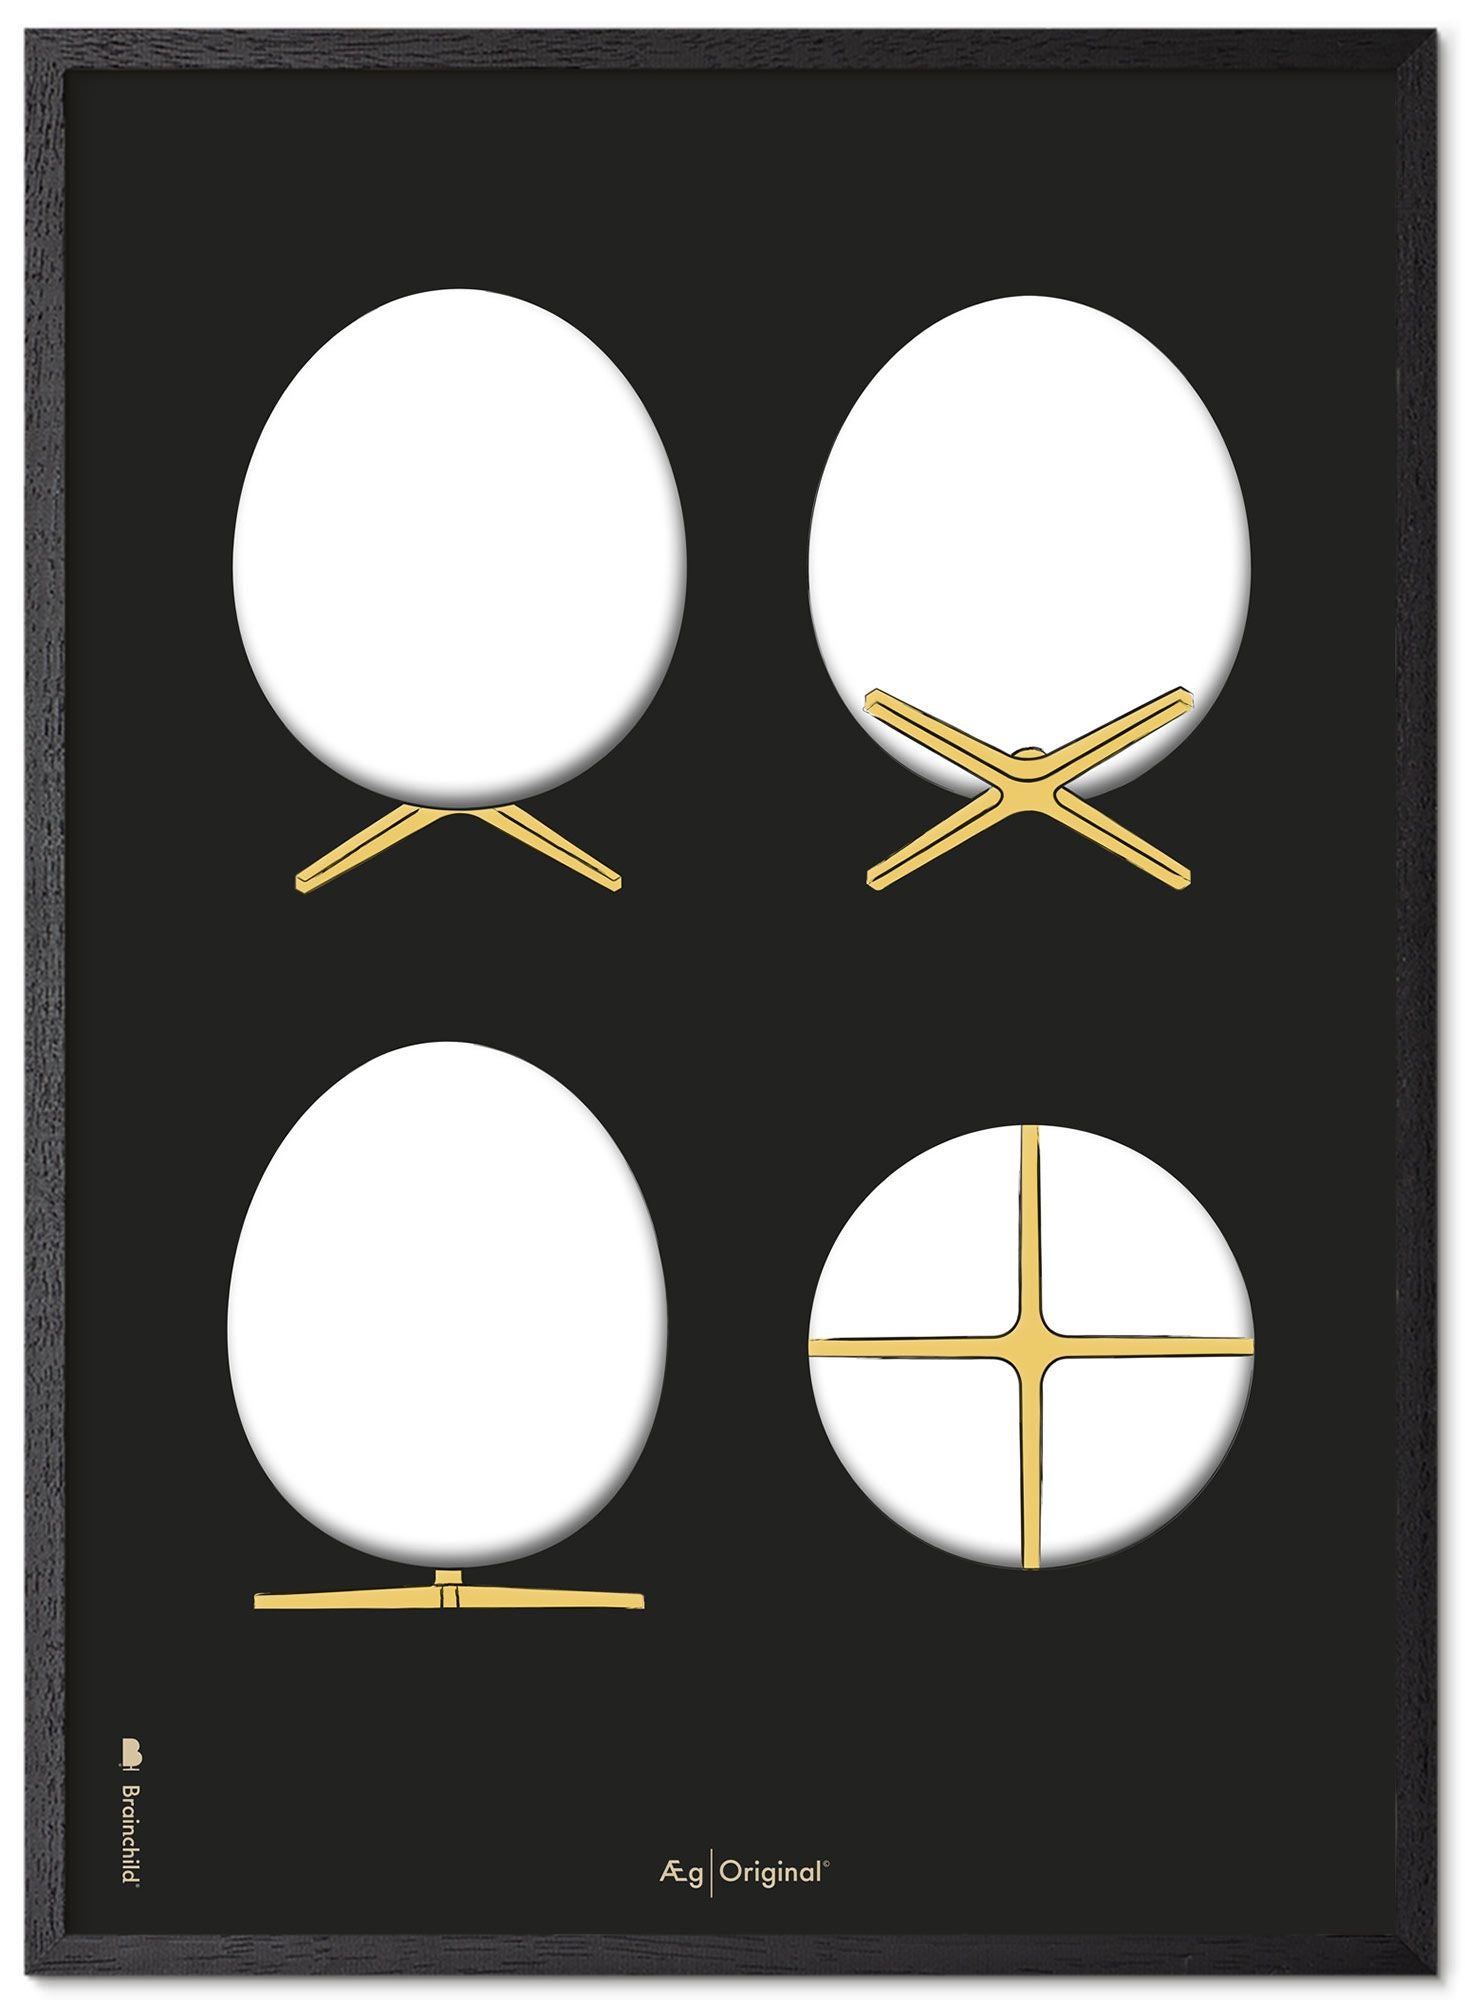 Prepare el marco de póster de bocetos de diseño de huevo hecho de madera lacada negra de 30x40 cm, fondo negro